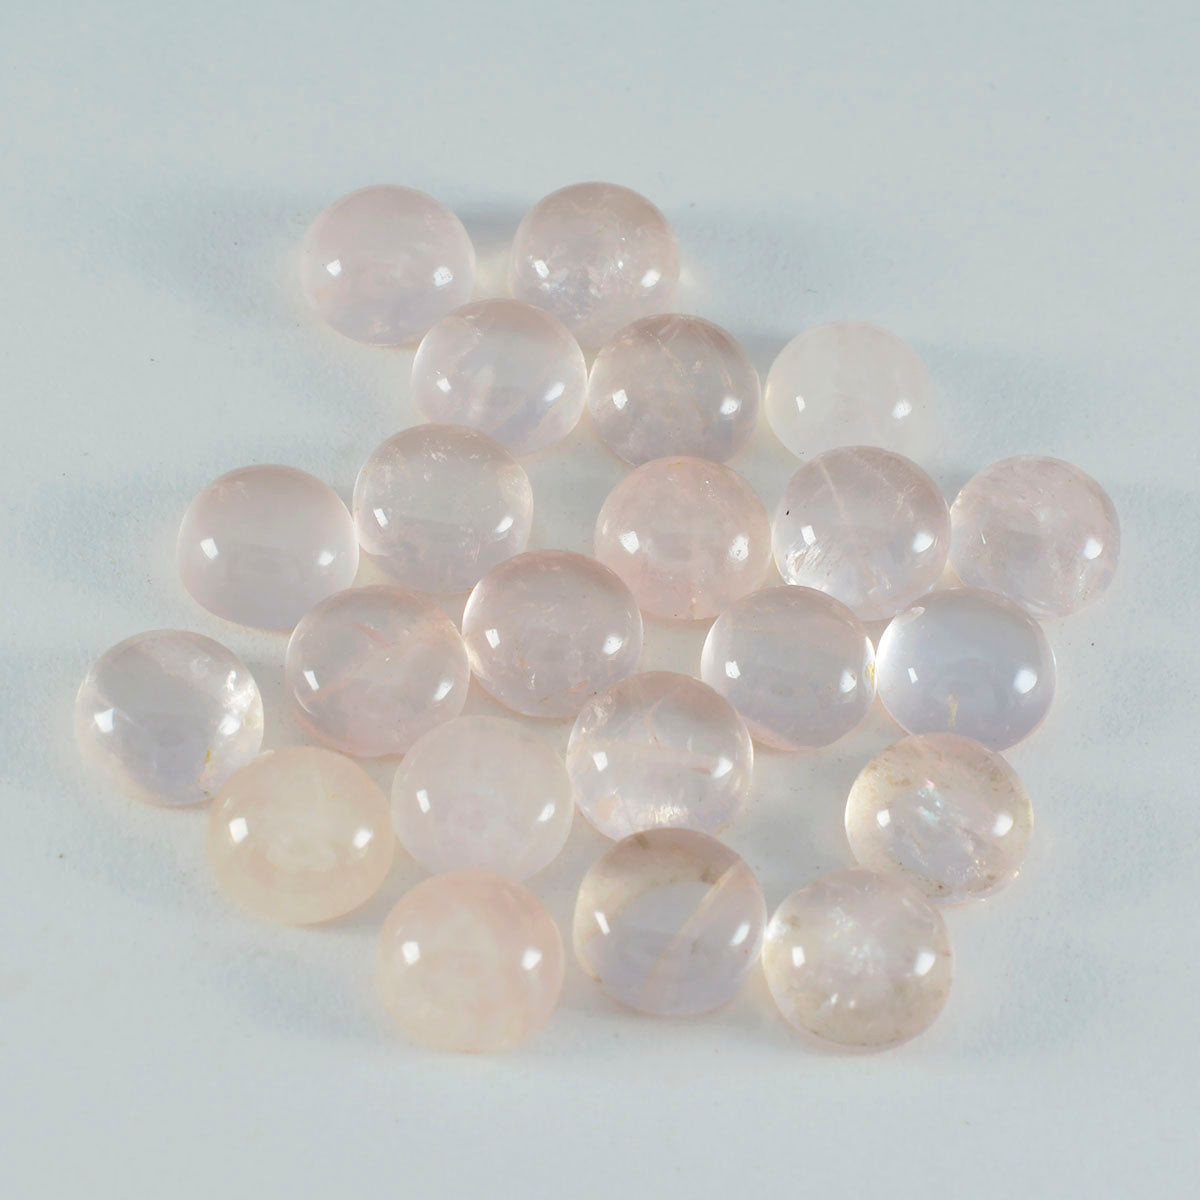 Riyogems 1 pc cabochon de quartz rose rose 7x7 mm forme ronde bonne qualité pierre en vrac